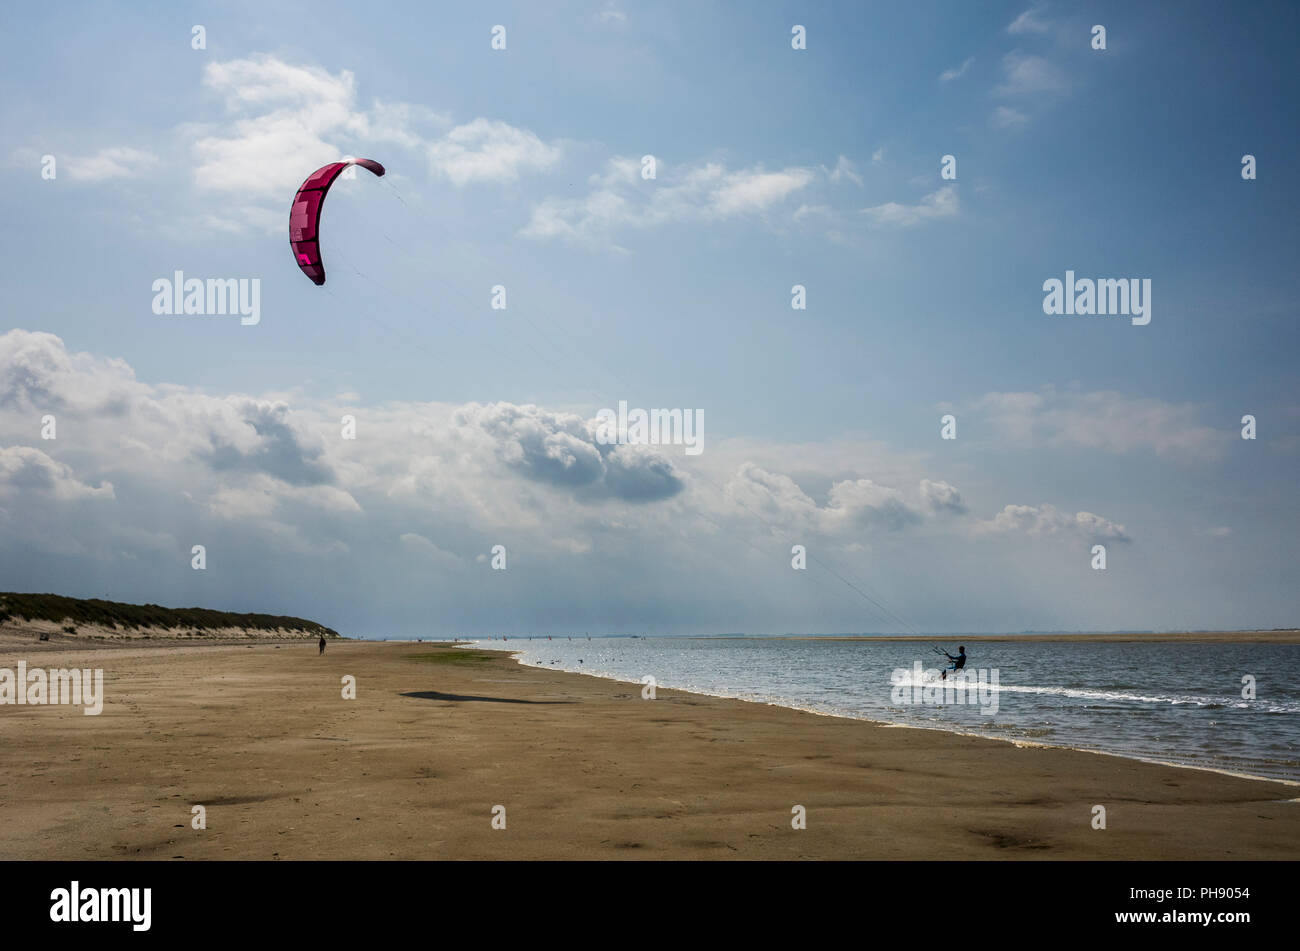 Am Strand Langeoog. Germania Deutschland. Una persona è kitesurf lungo il bordo dell'acqua della spiaggia di sabbia. Una stretta striscia di acqua di mare si estende lungo la spiaggia è ideale per gli sport acquatici. Fotografato su una luminosa giornata di sole principalmente con il cielo limpido ad eccezione di poche nuvole di luce. Foto Stock